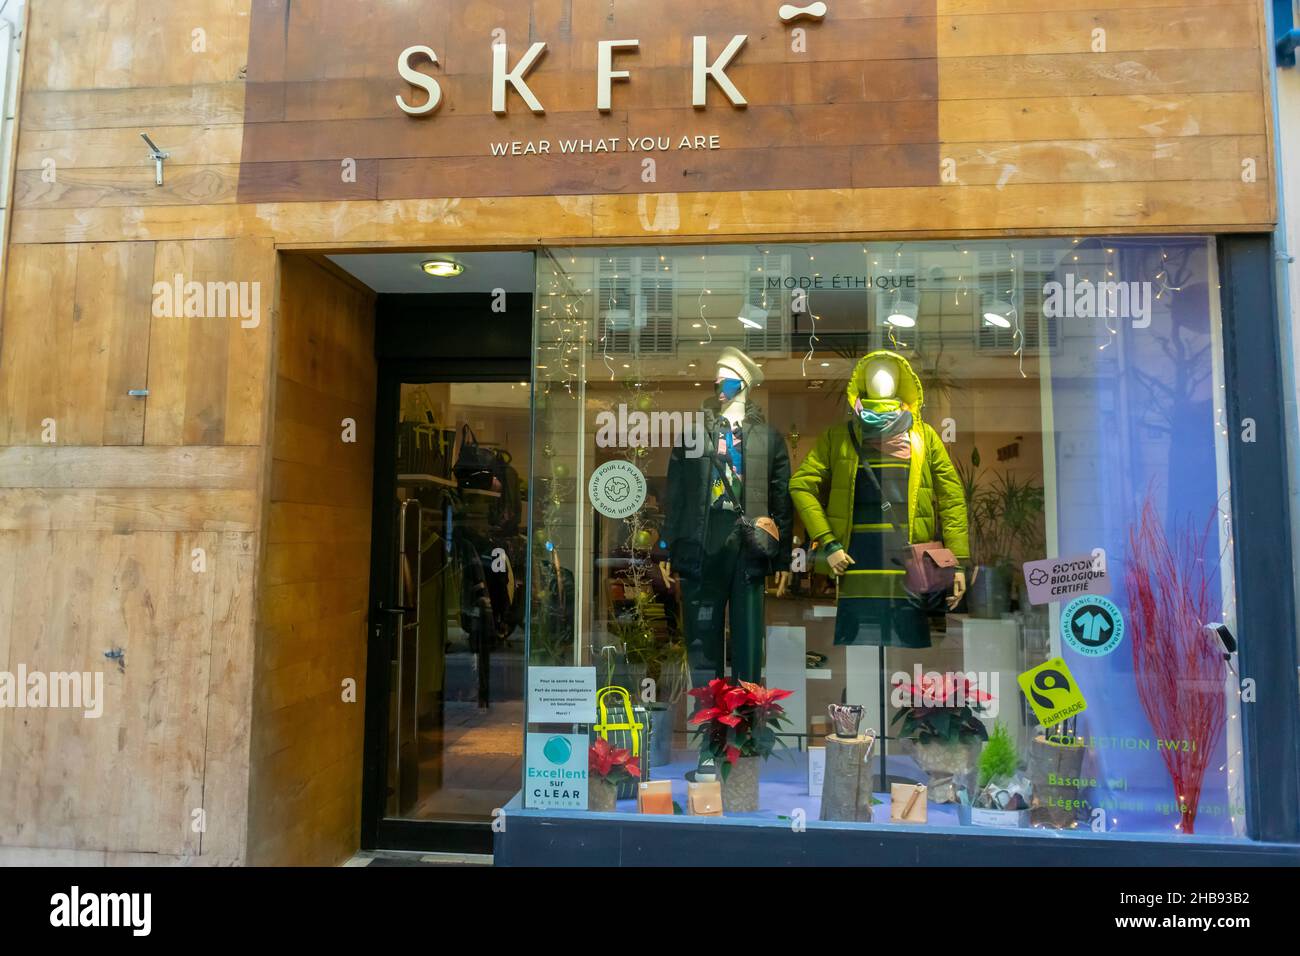 Marsella, Francia, tienda de ropa de comercio justo local, SKFK, interior, escaparate de la tienda, ropa para Negocio sostenible, moda ética y sostenible Fotografía de - Alamy